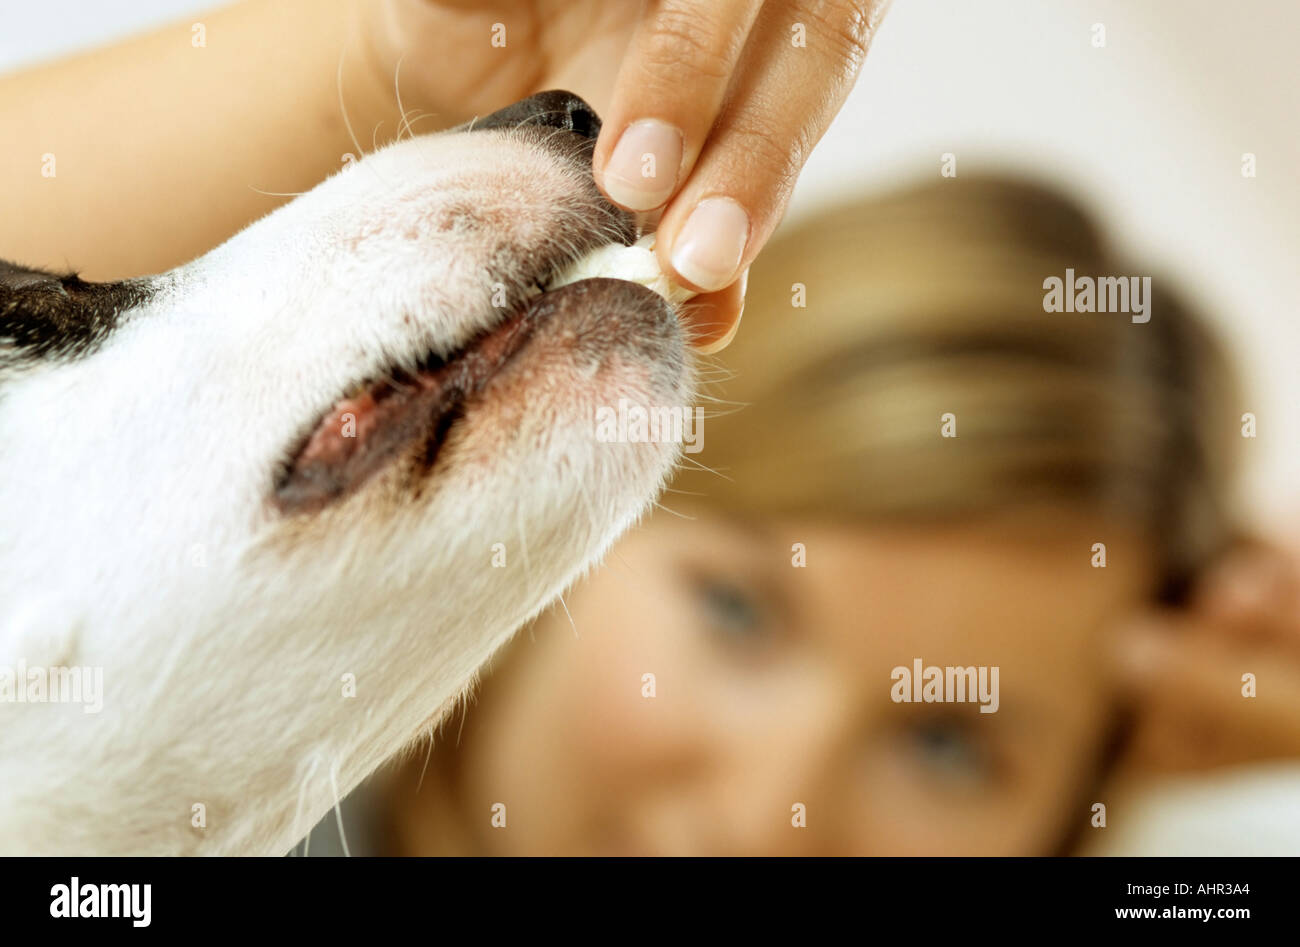 Lady owner feeding dog Stock Photo